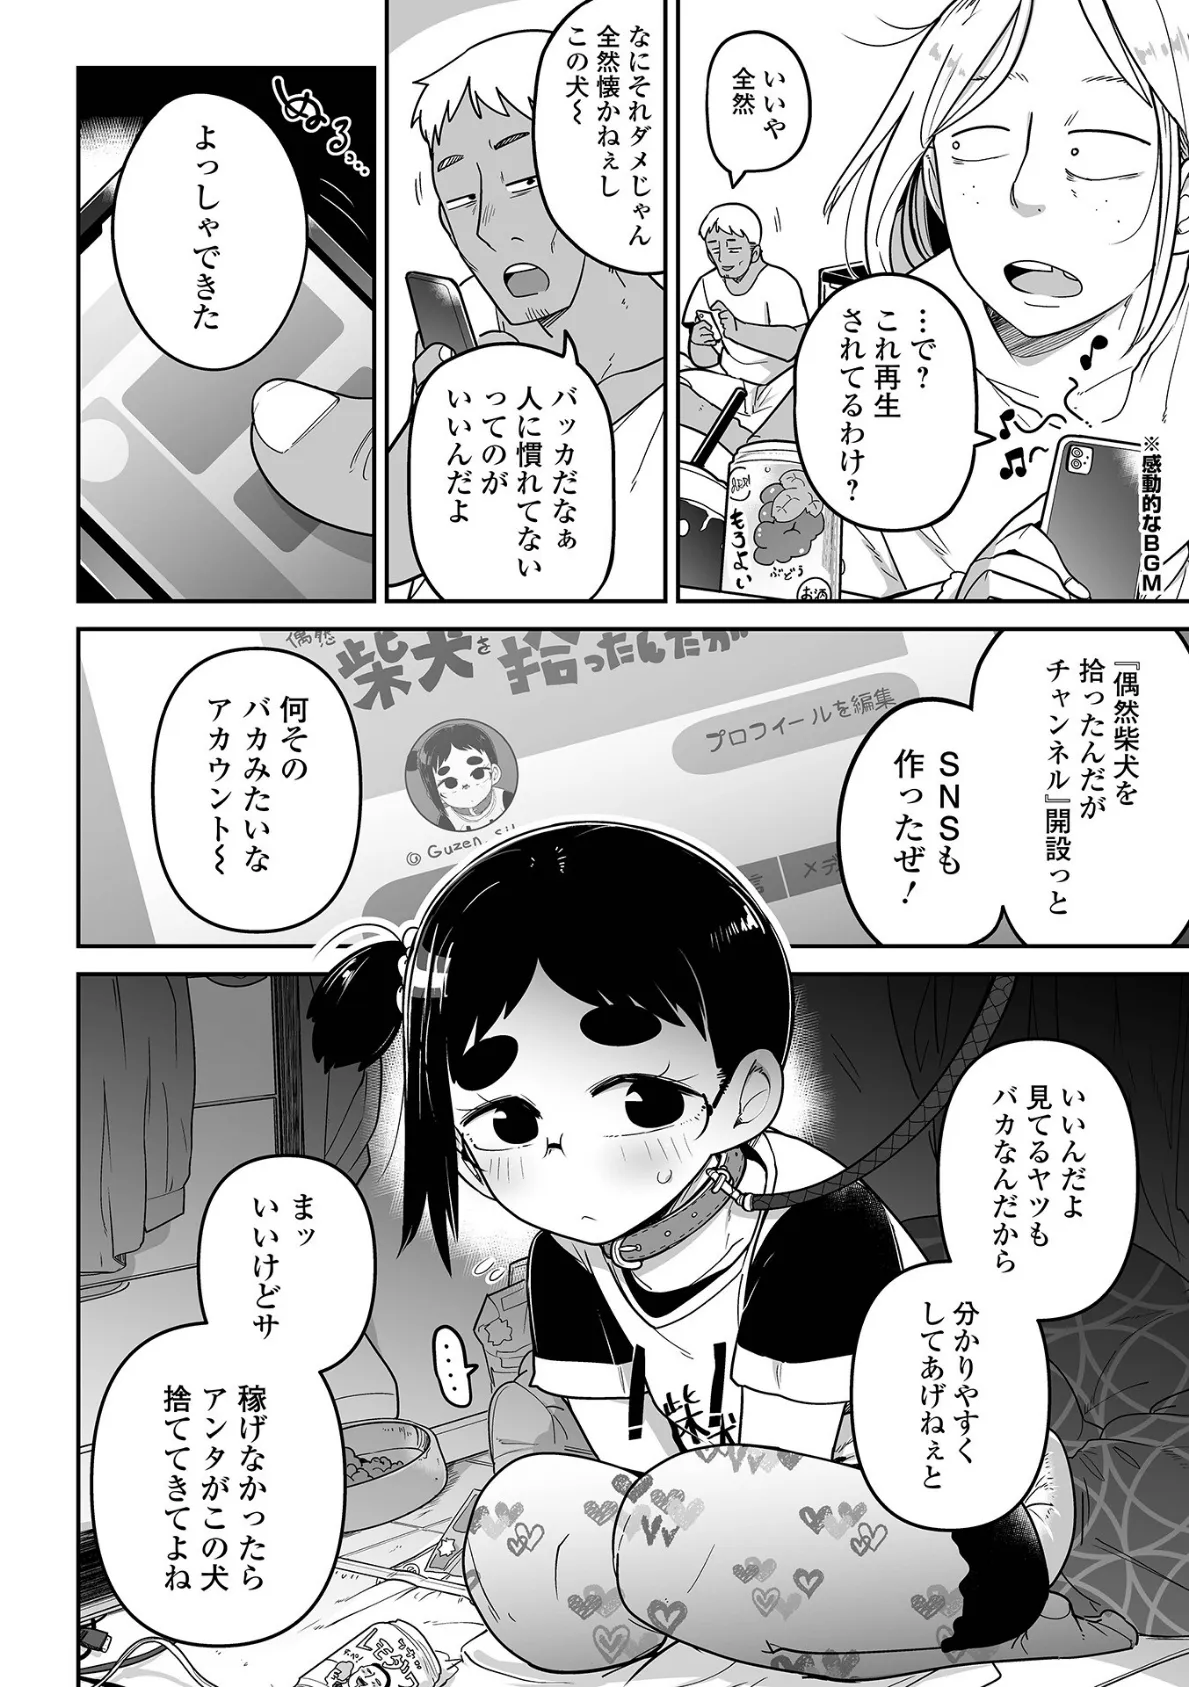 メスガキ vs ワナビおじさんハーフ版 12ページ